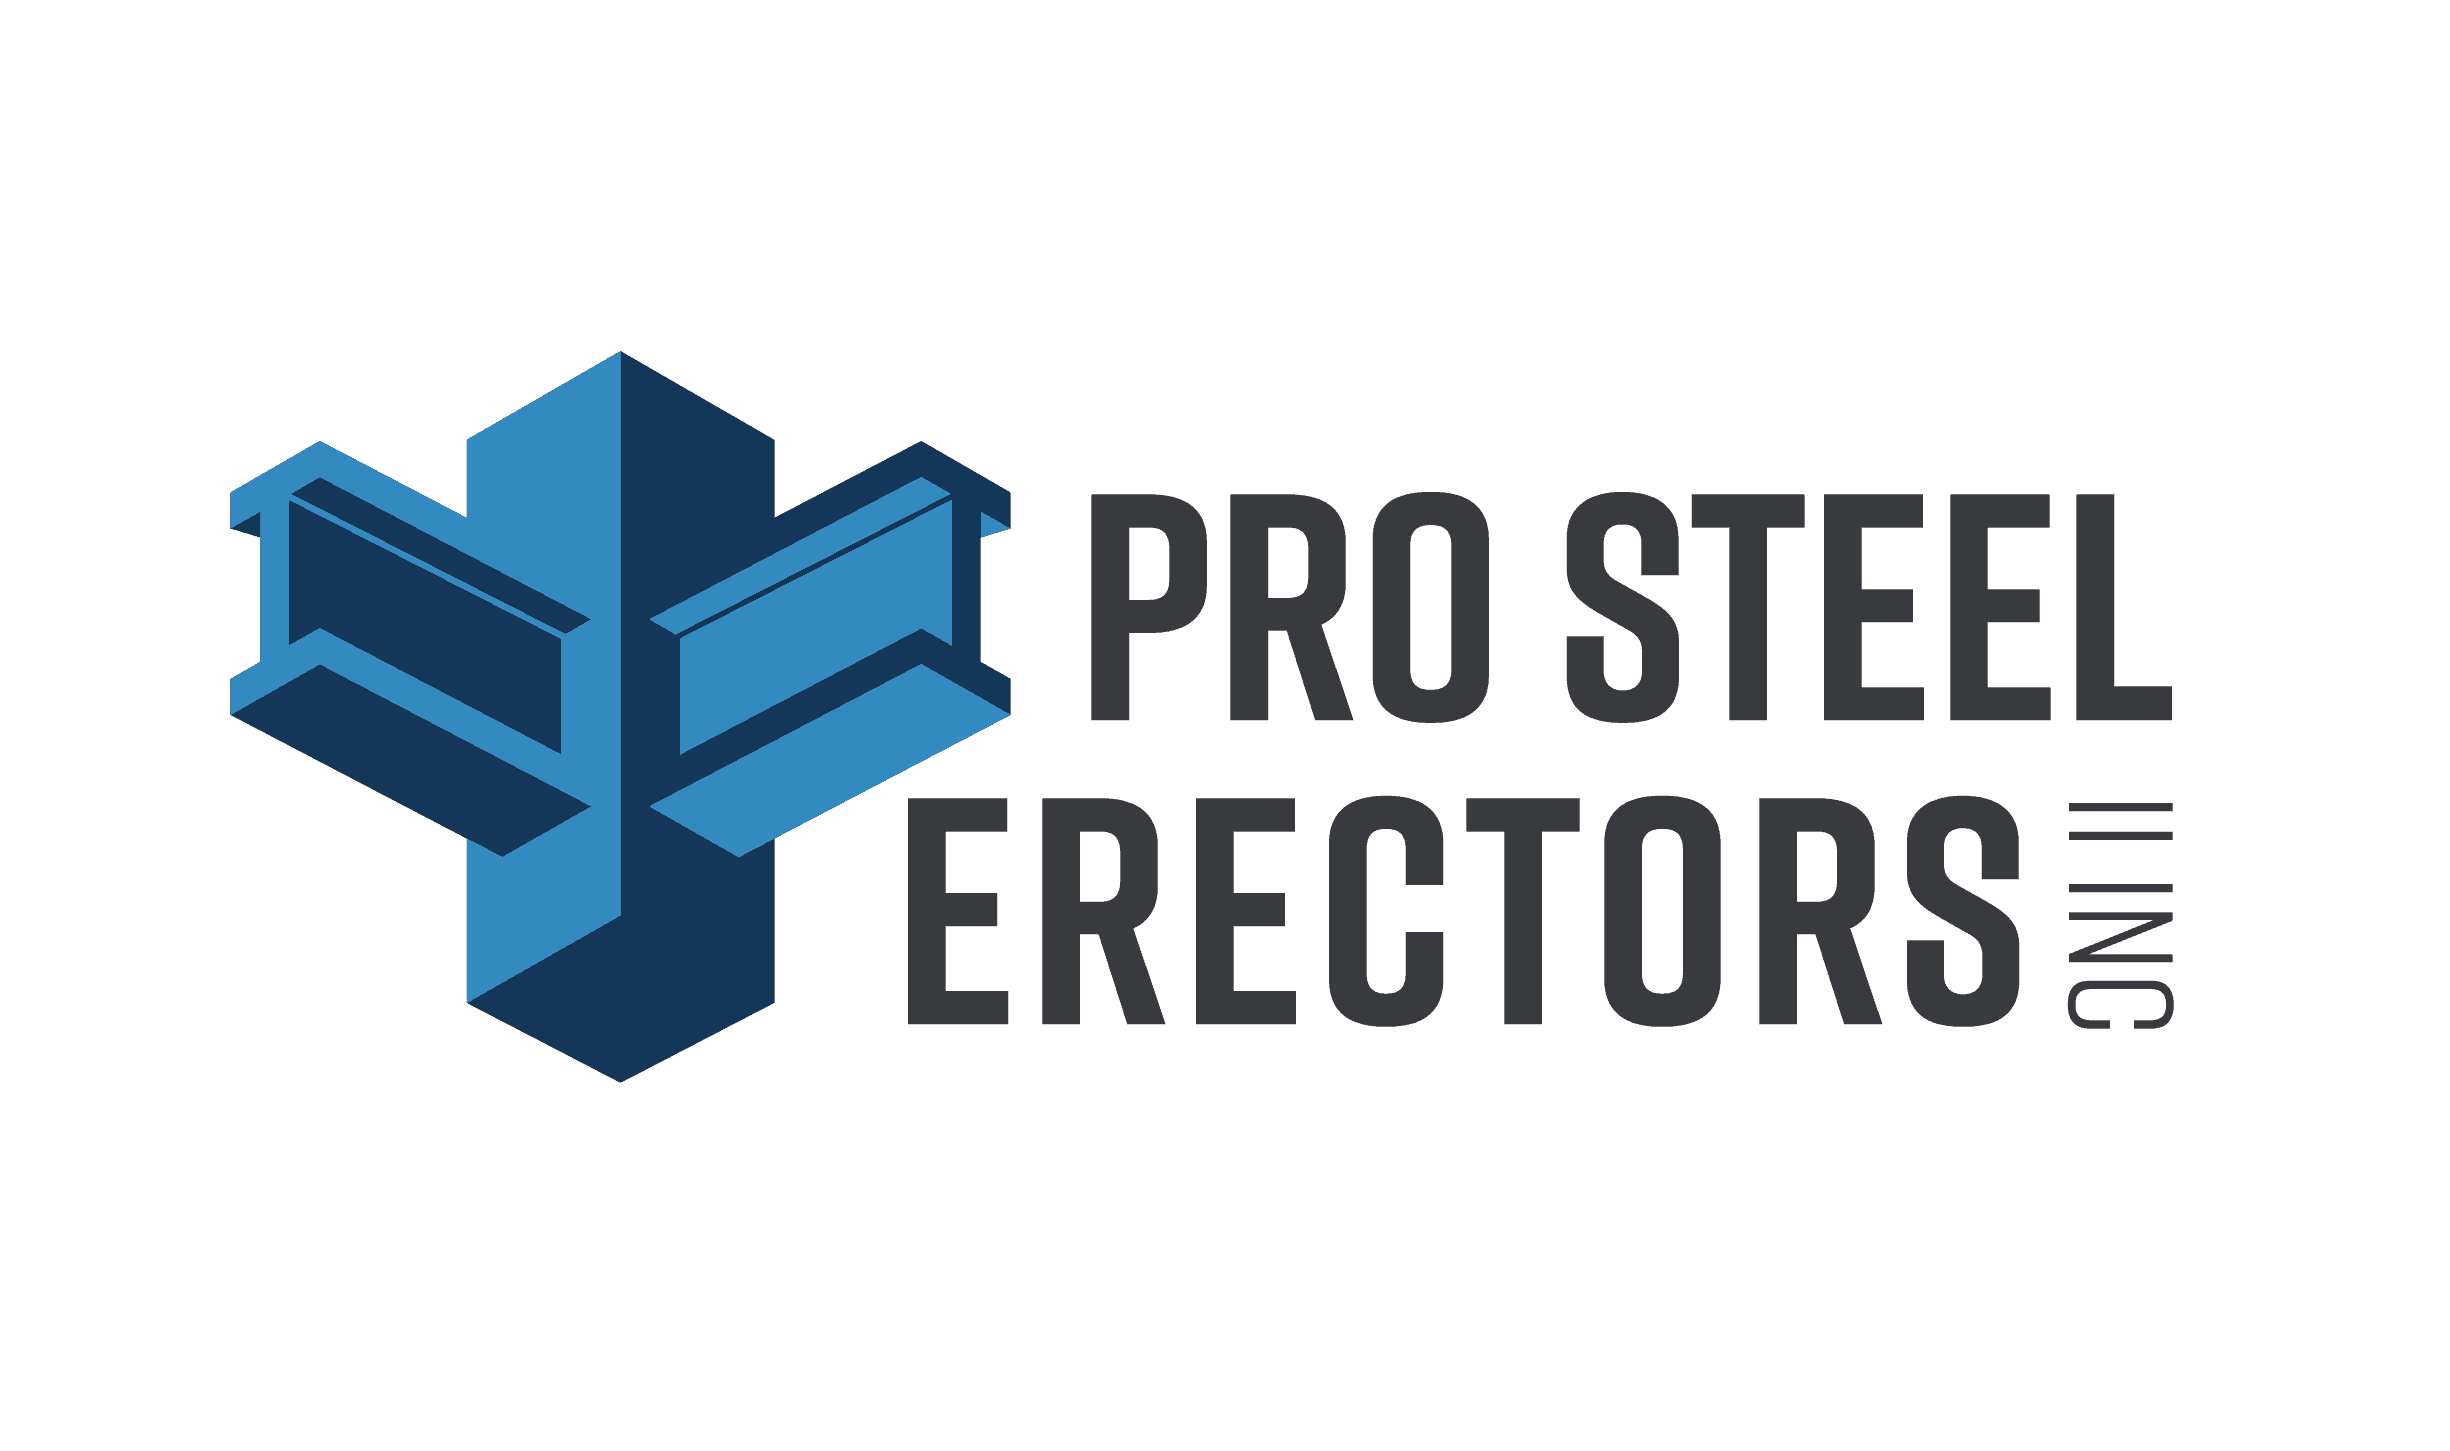 Pro Steel Erectors - Arizona's full-service structural steel erector